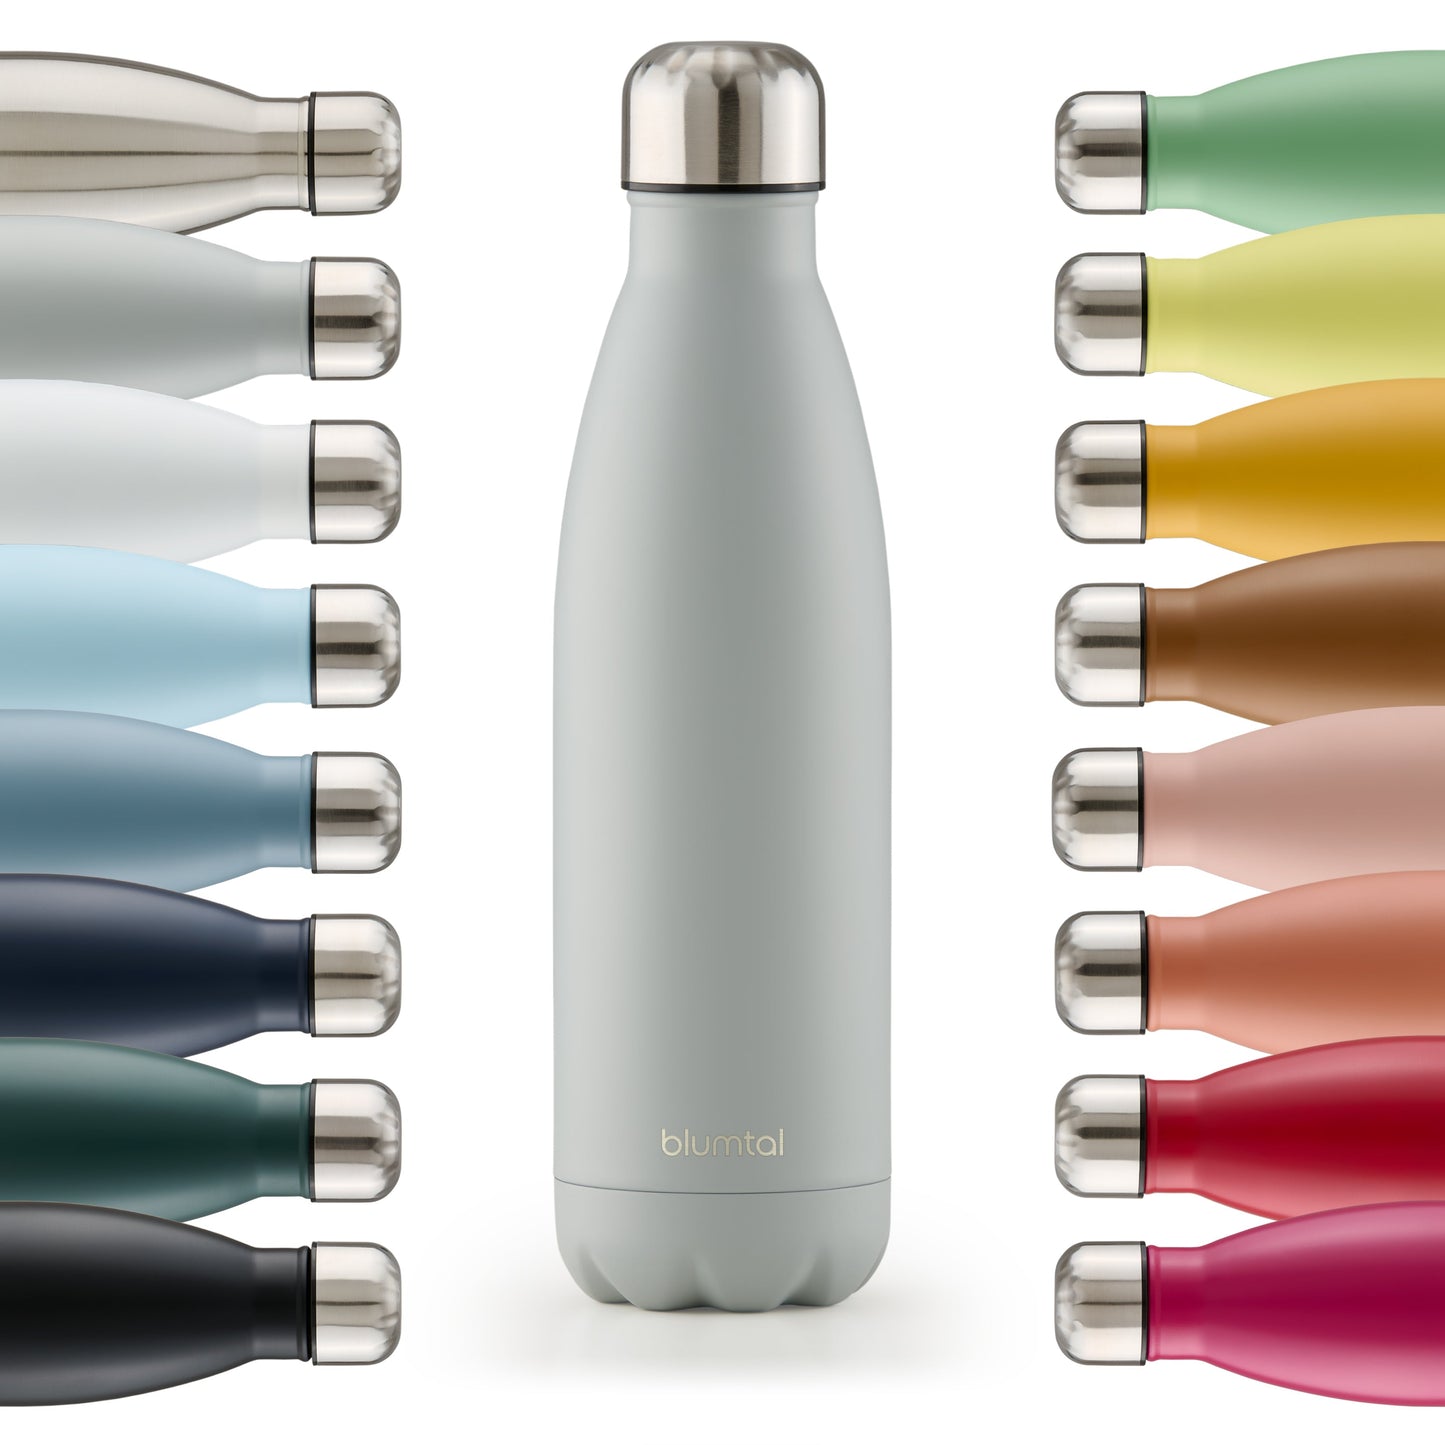 Farbige Auswahl an isolierten Edelstahl-Trinkflaschen von blumtal in einer Reihe angeordnet mit Fokus auf eine vorderseitige ultimate grau farbene Flasche.